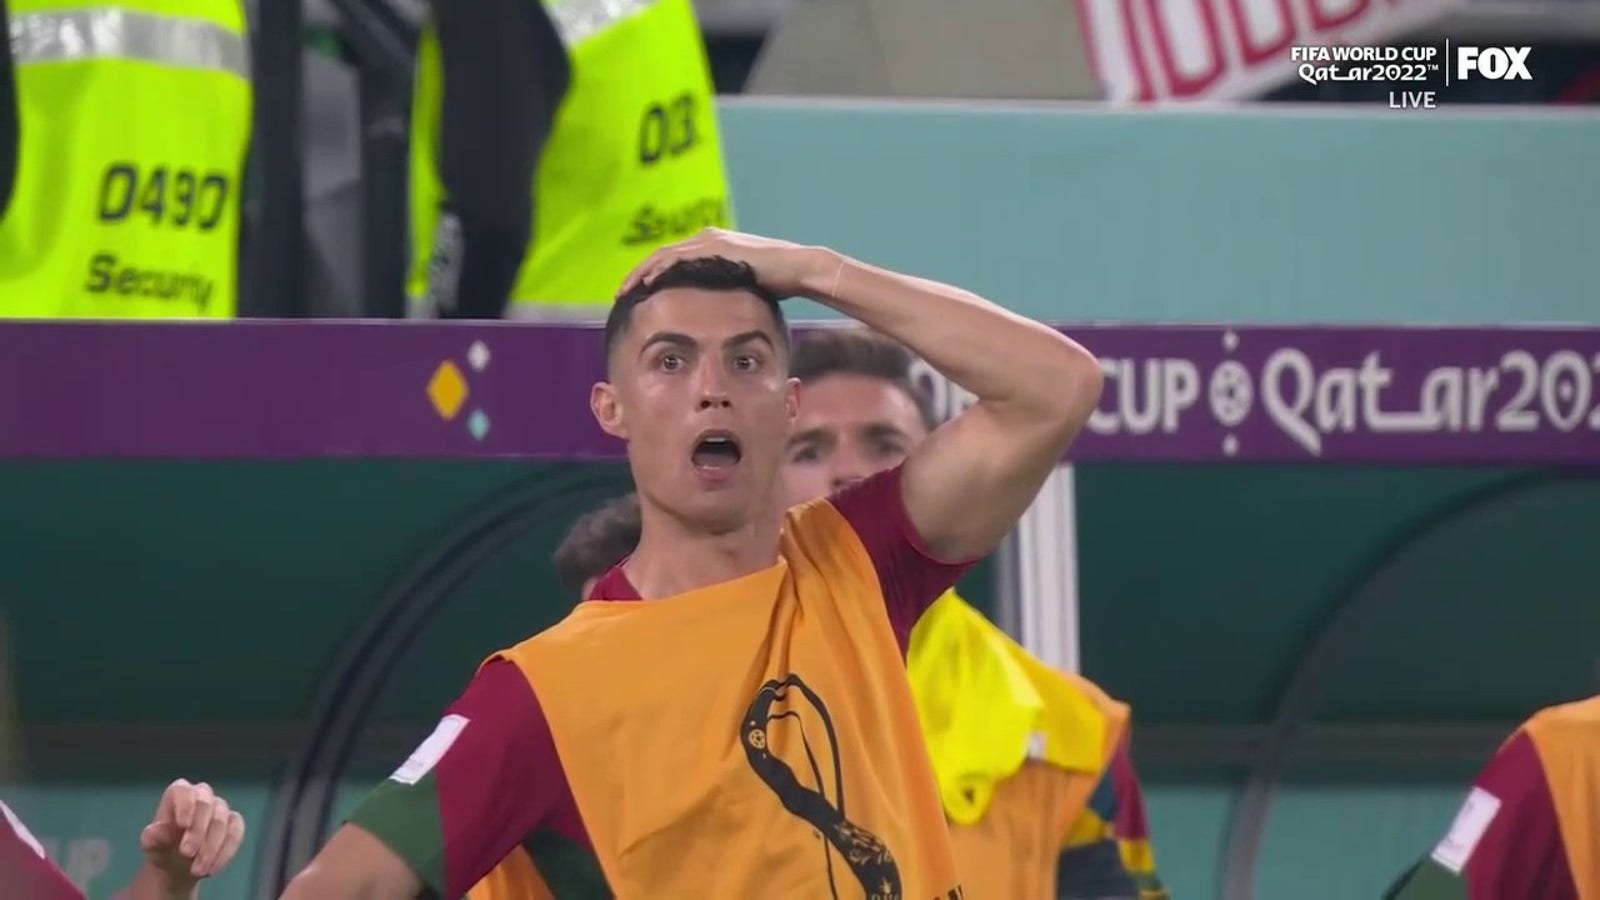 Gana quase conseguiu empatar o jogo com Portugal depois de uma falha no final do jogo do goleiro de Diogo Costa